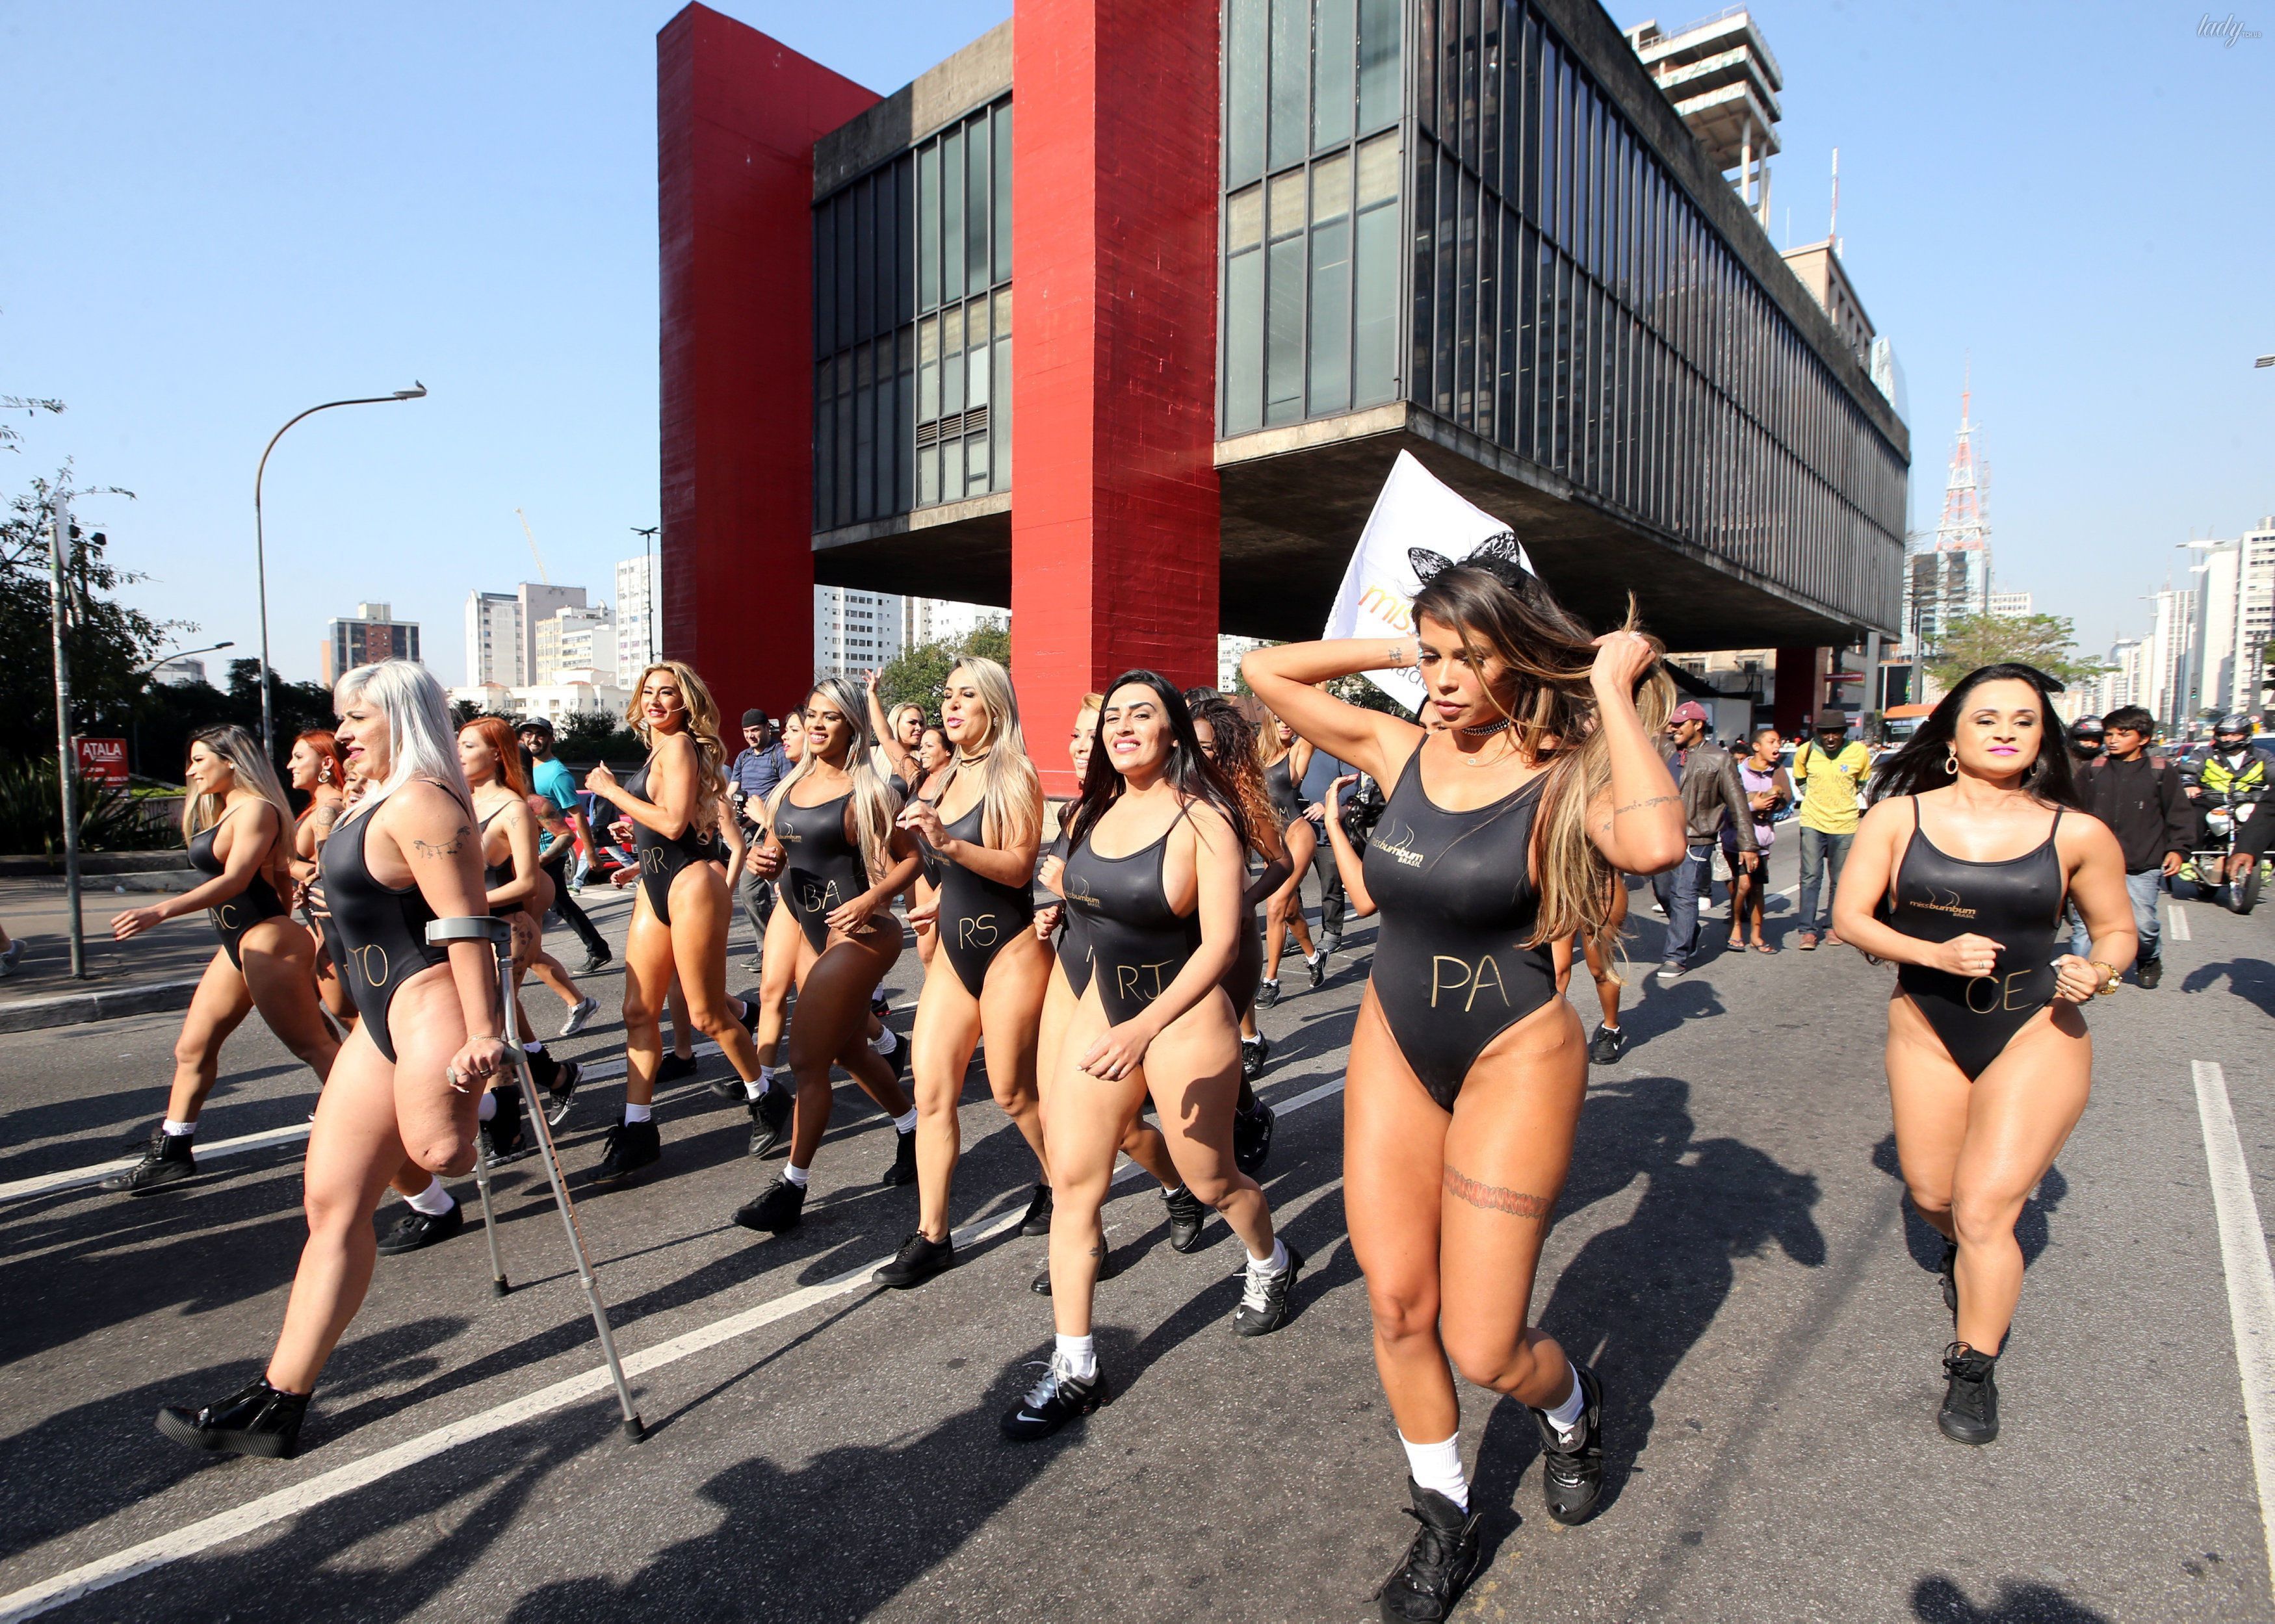 Кім Кардашьян позаздрить -  бразилійки в купальниках похвалилися сексуальними сідницями. Пристрасні бразилійки в купальниках похвалилися сексуальними сідницями на вулиці міста